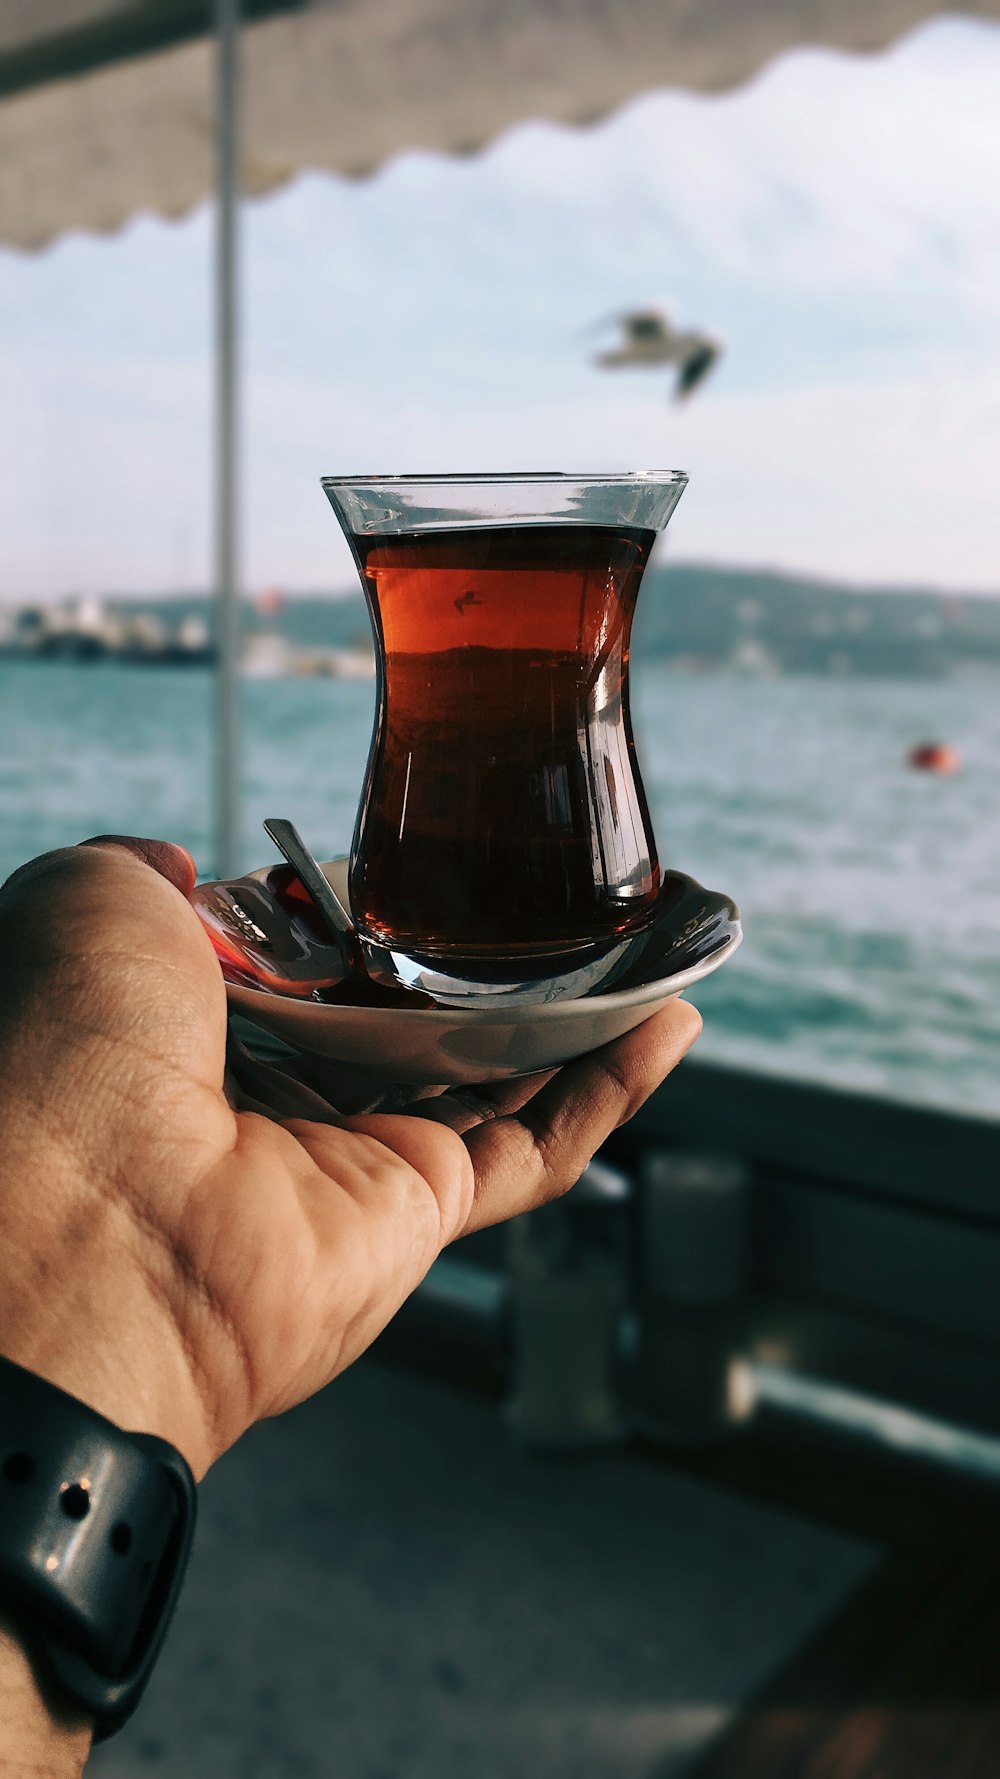 Verre à thé turc sur la paume de la main de la personne